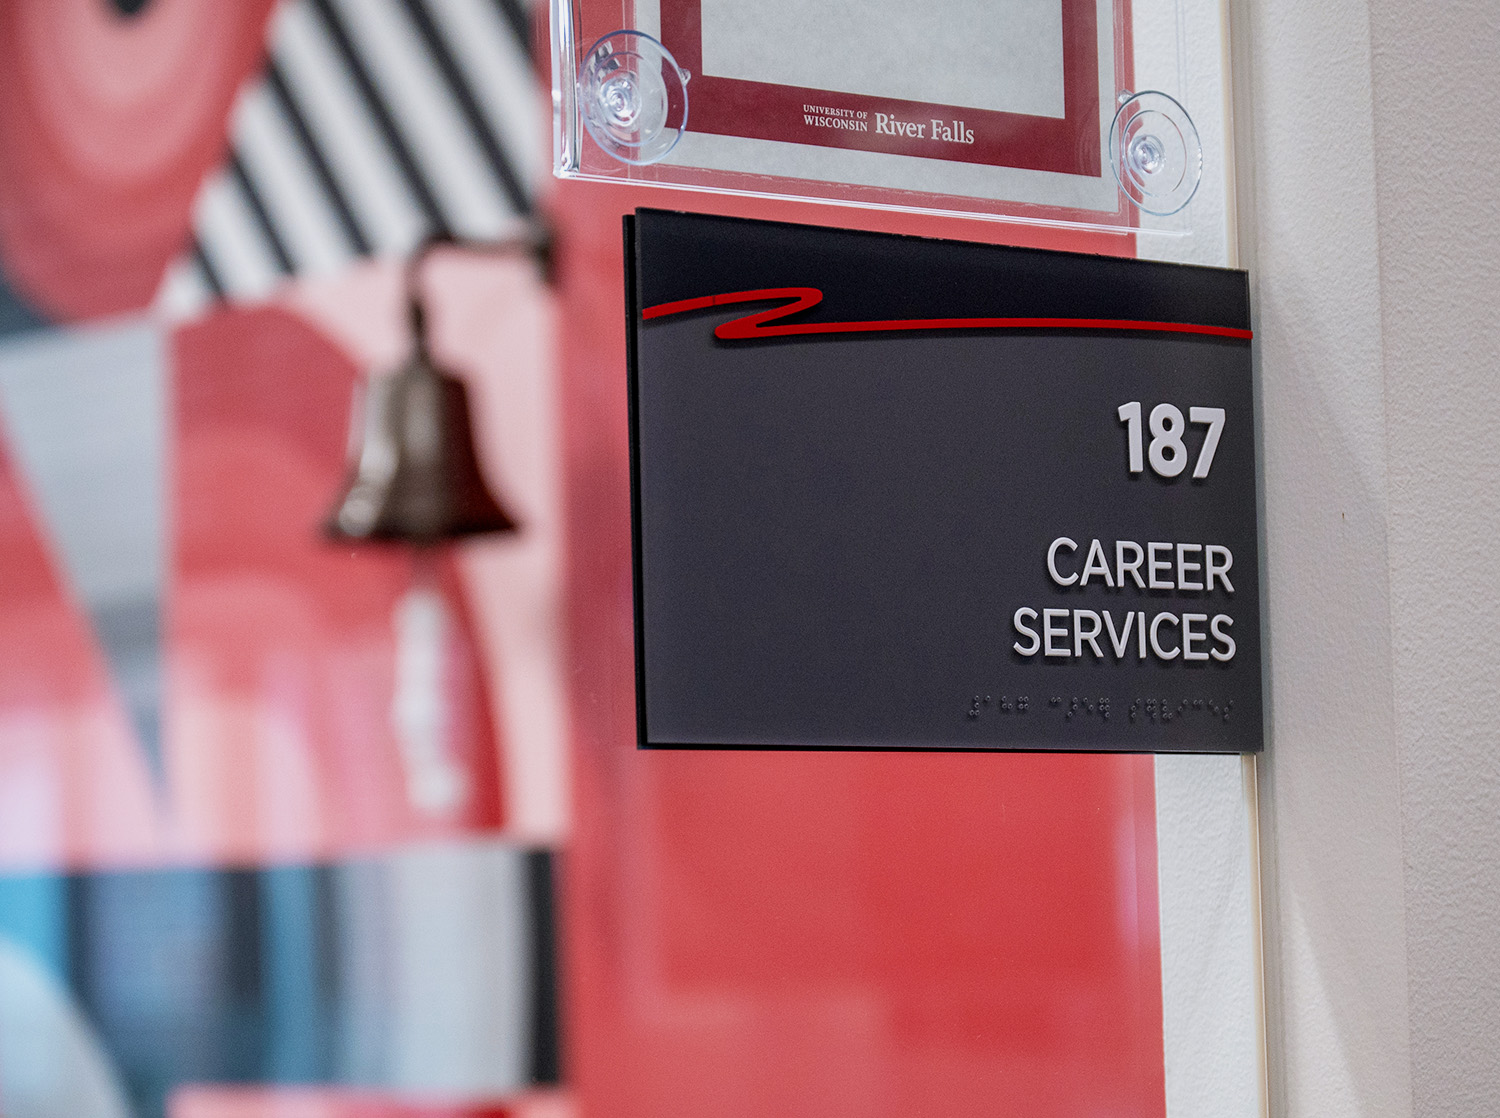 Career services front door